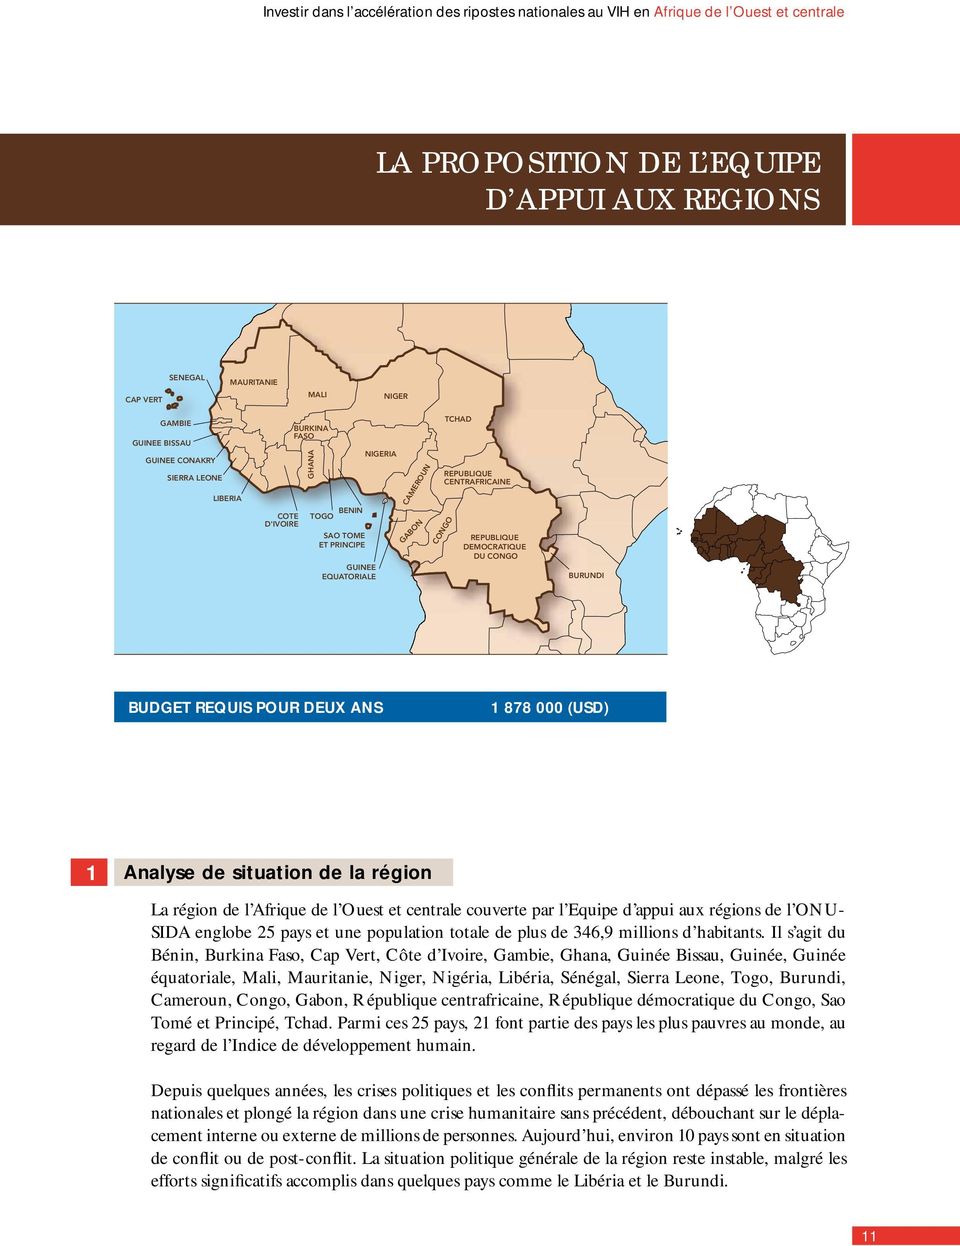 DEMOCRATIQUE DU CONGO BURUNDI BUDGET REQUIS POUR DEUX ANS 1 878 000 (USD) 1 Analyse de situation de la région La région de l Afrique de l Ouest et centrale couverte par l Equipe d appui aux régions